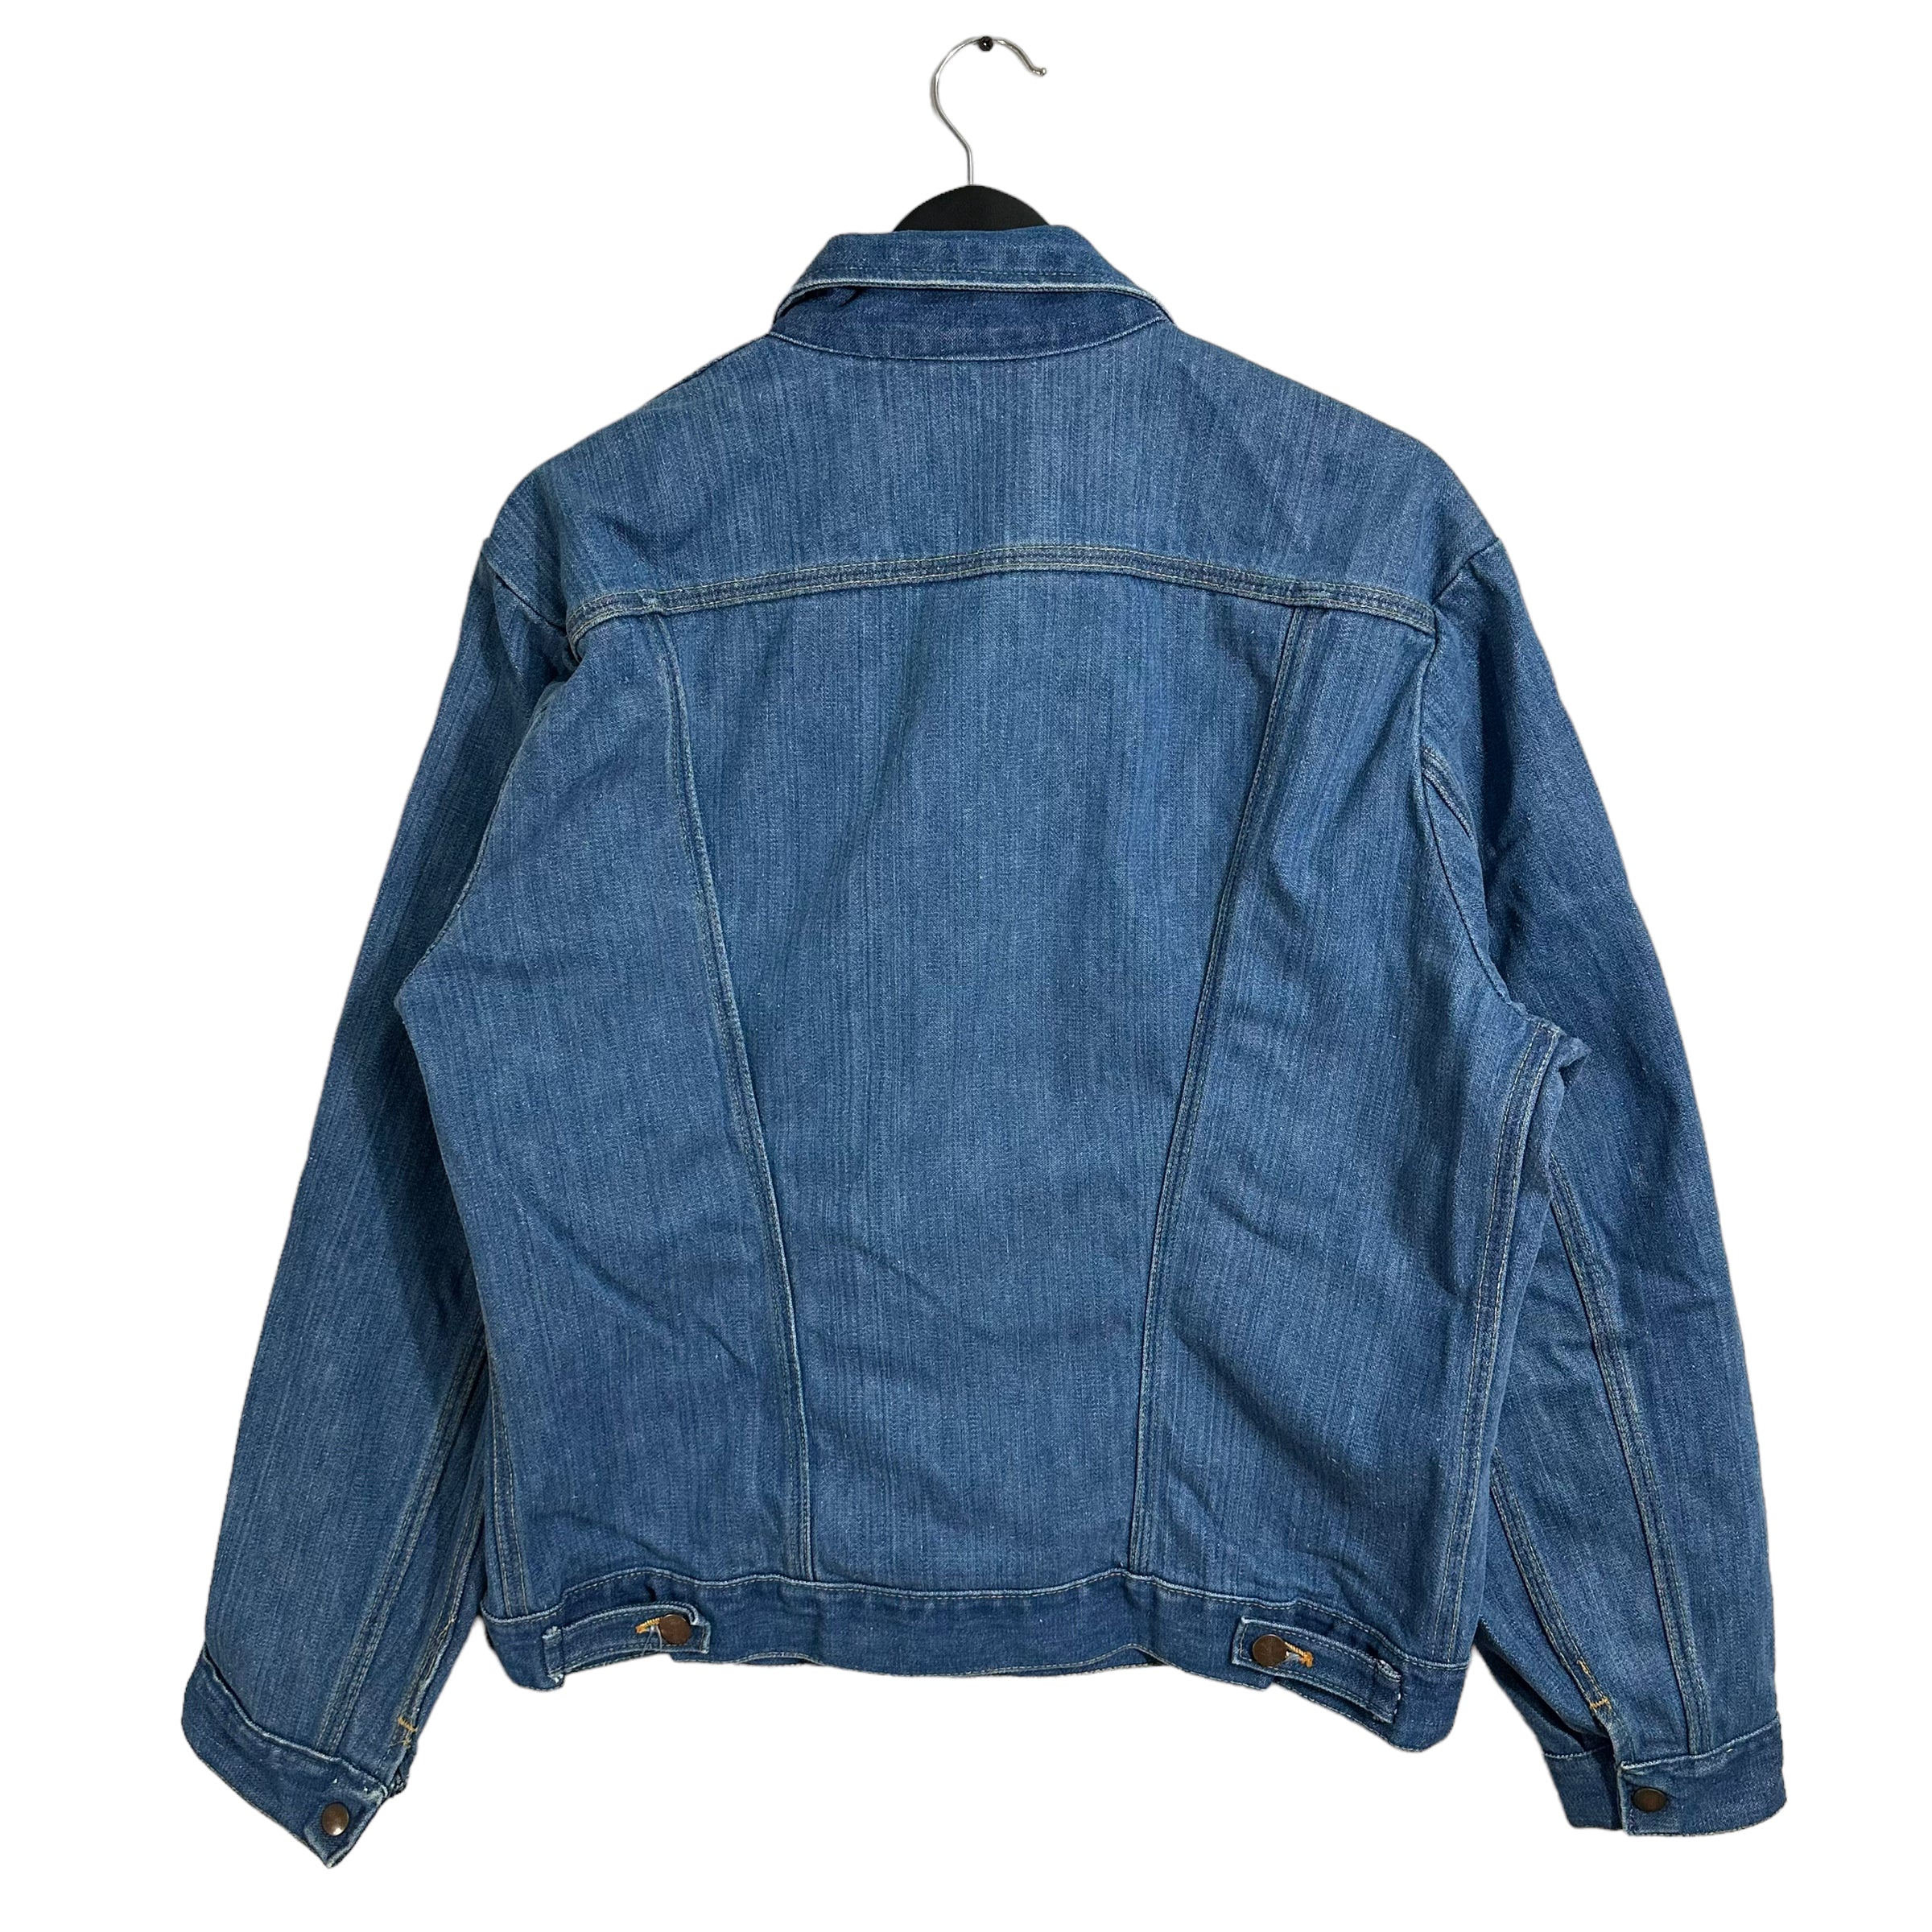 Vintage Wrangler Denim Jacket 90s